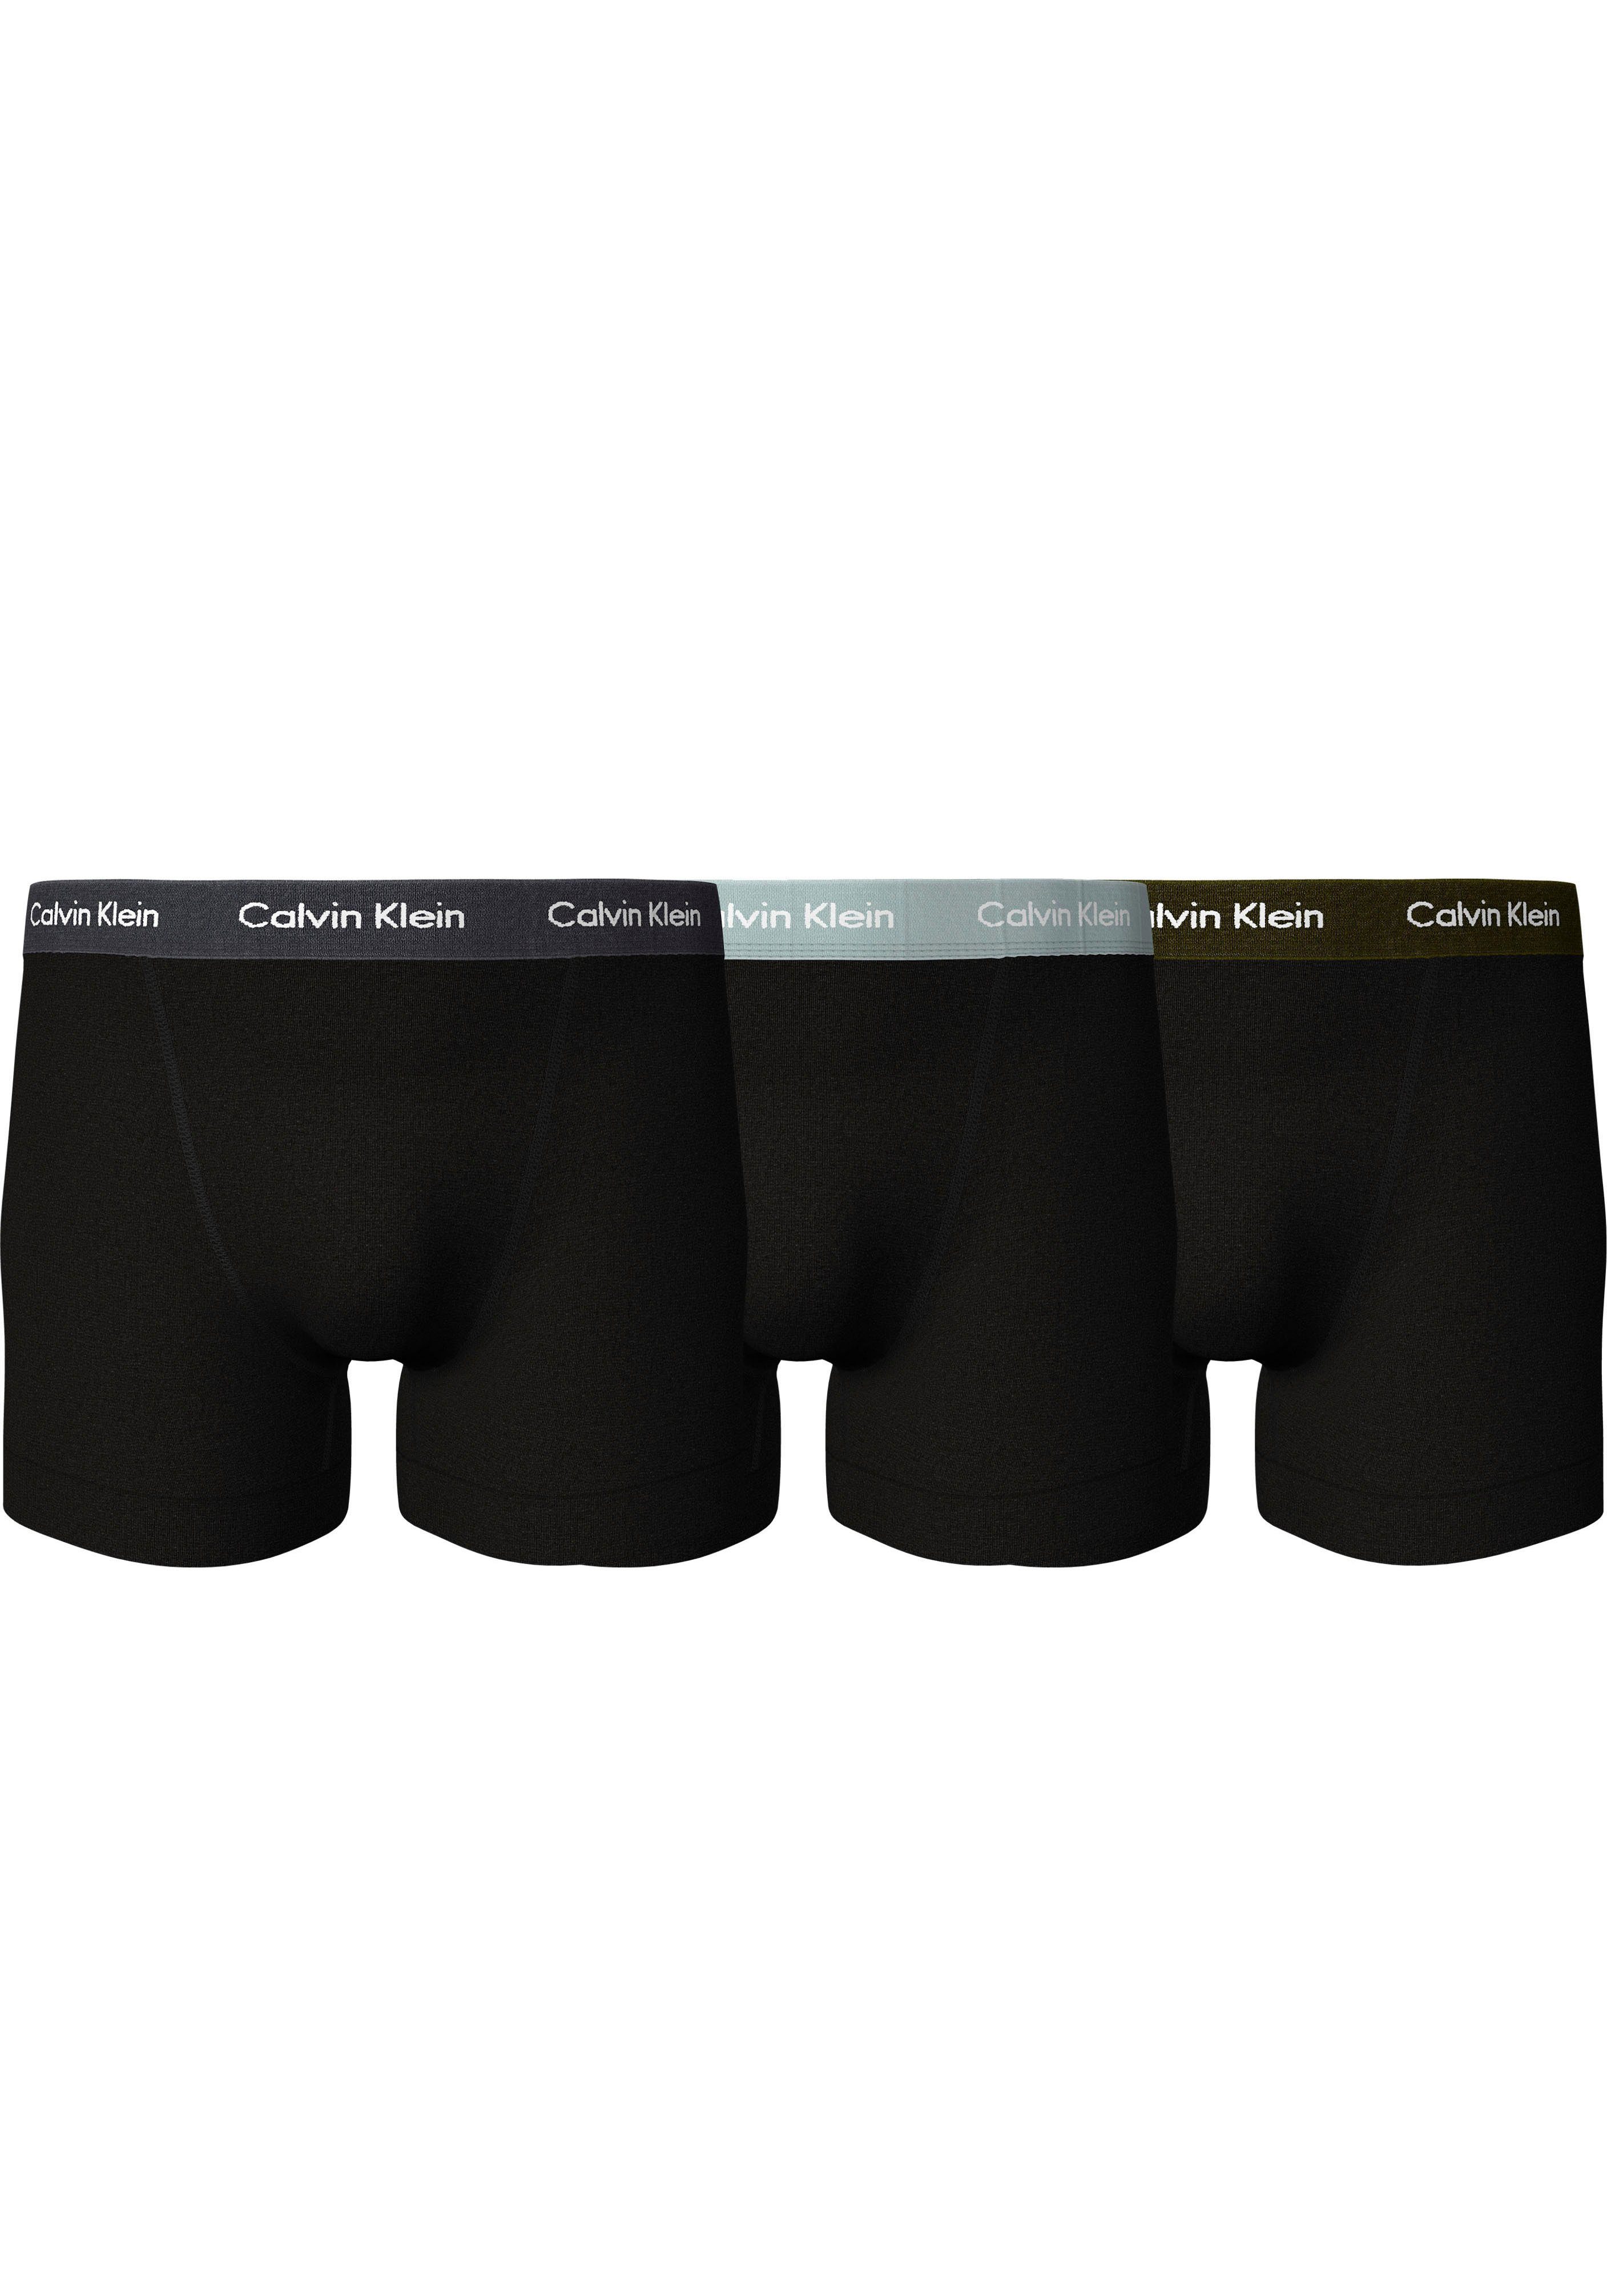 Calvin Klein Unterhosen » Calvin Klein UNDERWEAR online kaufen | OTTO